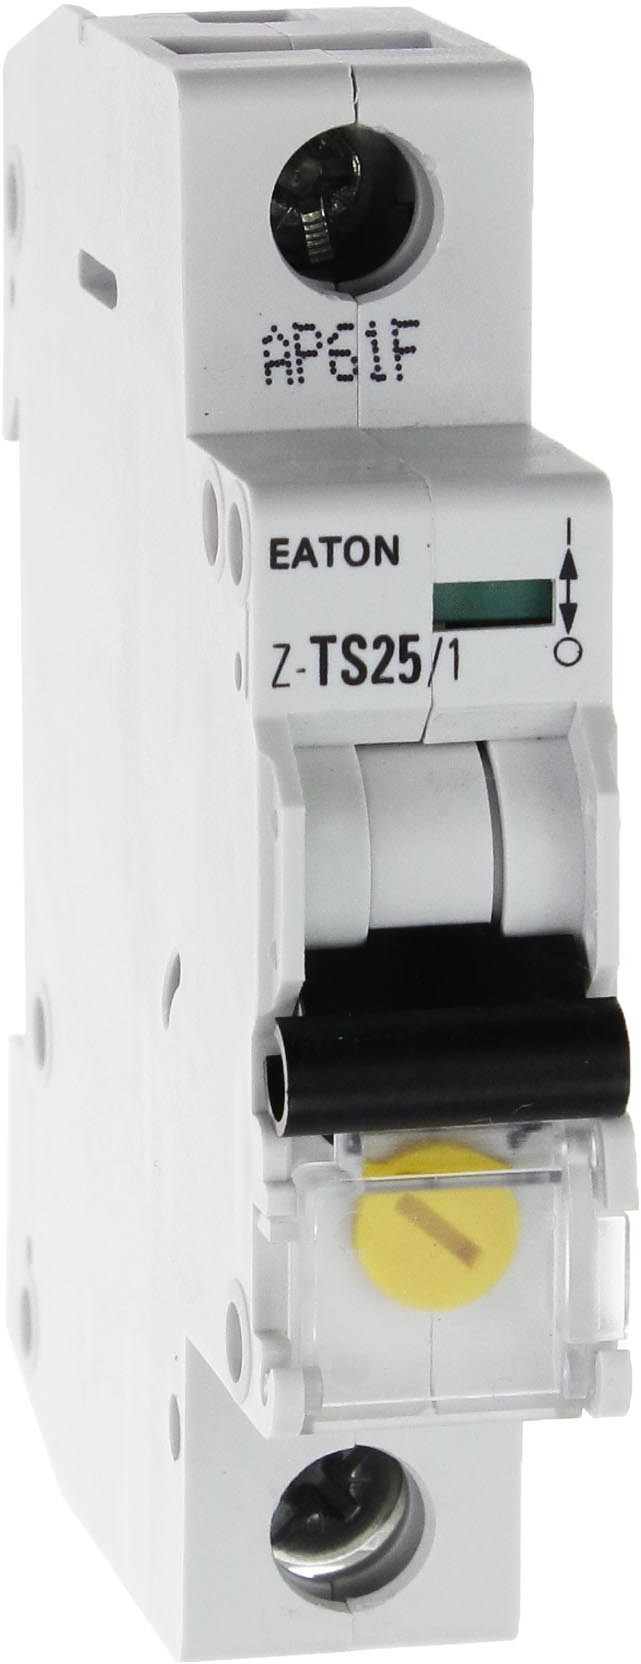 LEGRAND taryfowy 1P 16-20-25A Z-TS25/1 1P 266852 Eaton Electric